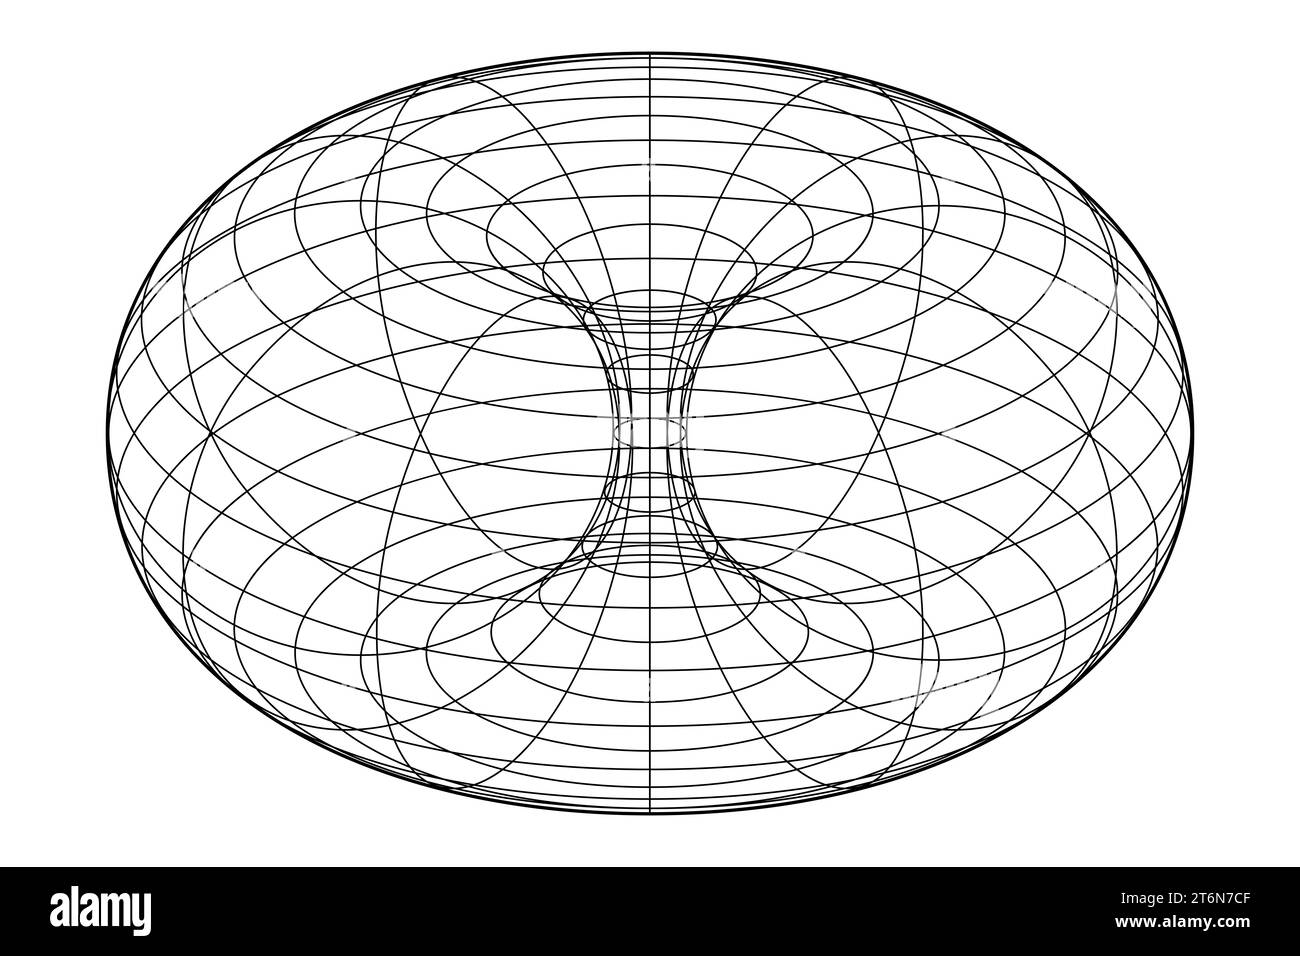 Drahtrahmen eines Ringtorus, auch Donut oder Donut. In der Geometrie eine Rotationsfläche, die durch Drehen eines Kreises im 3D-Raum erzeugt wird. Stockfoto